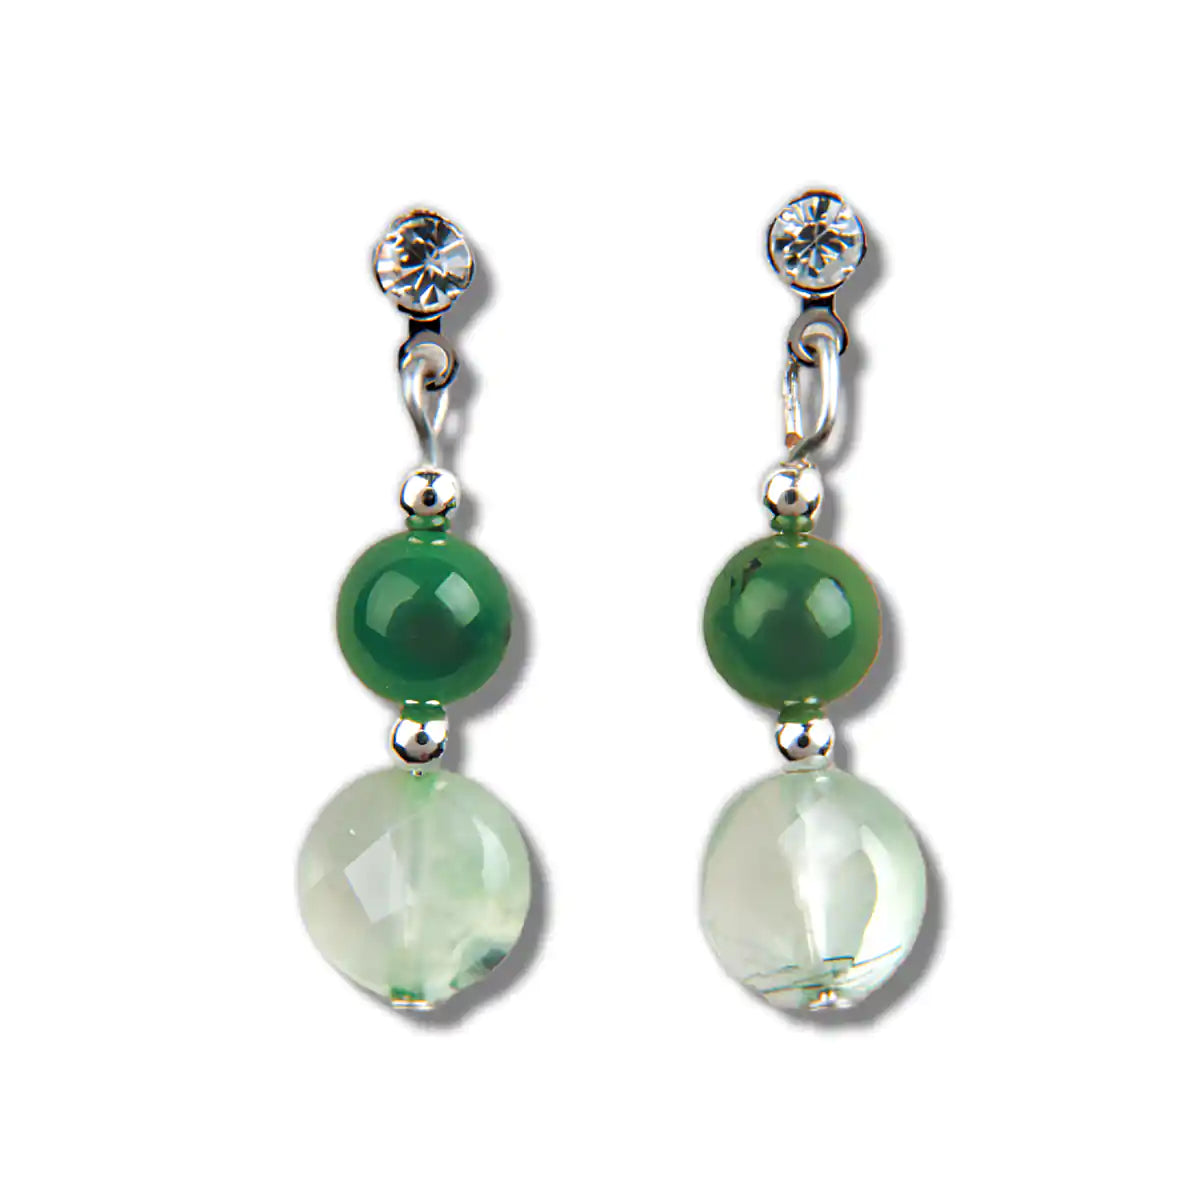 Jade secrets earrings